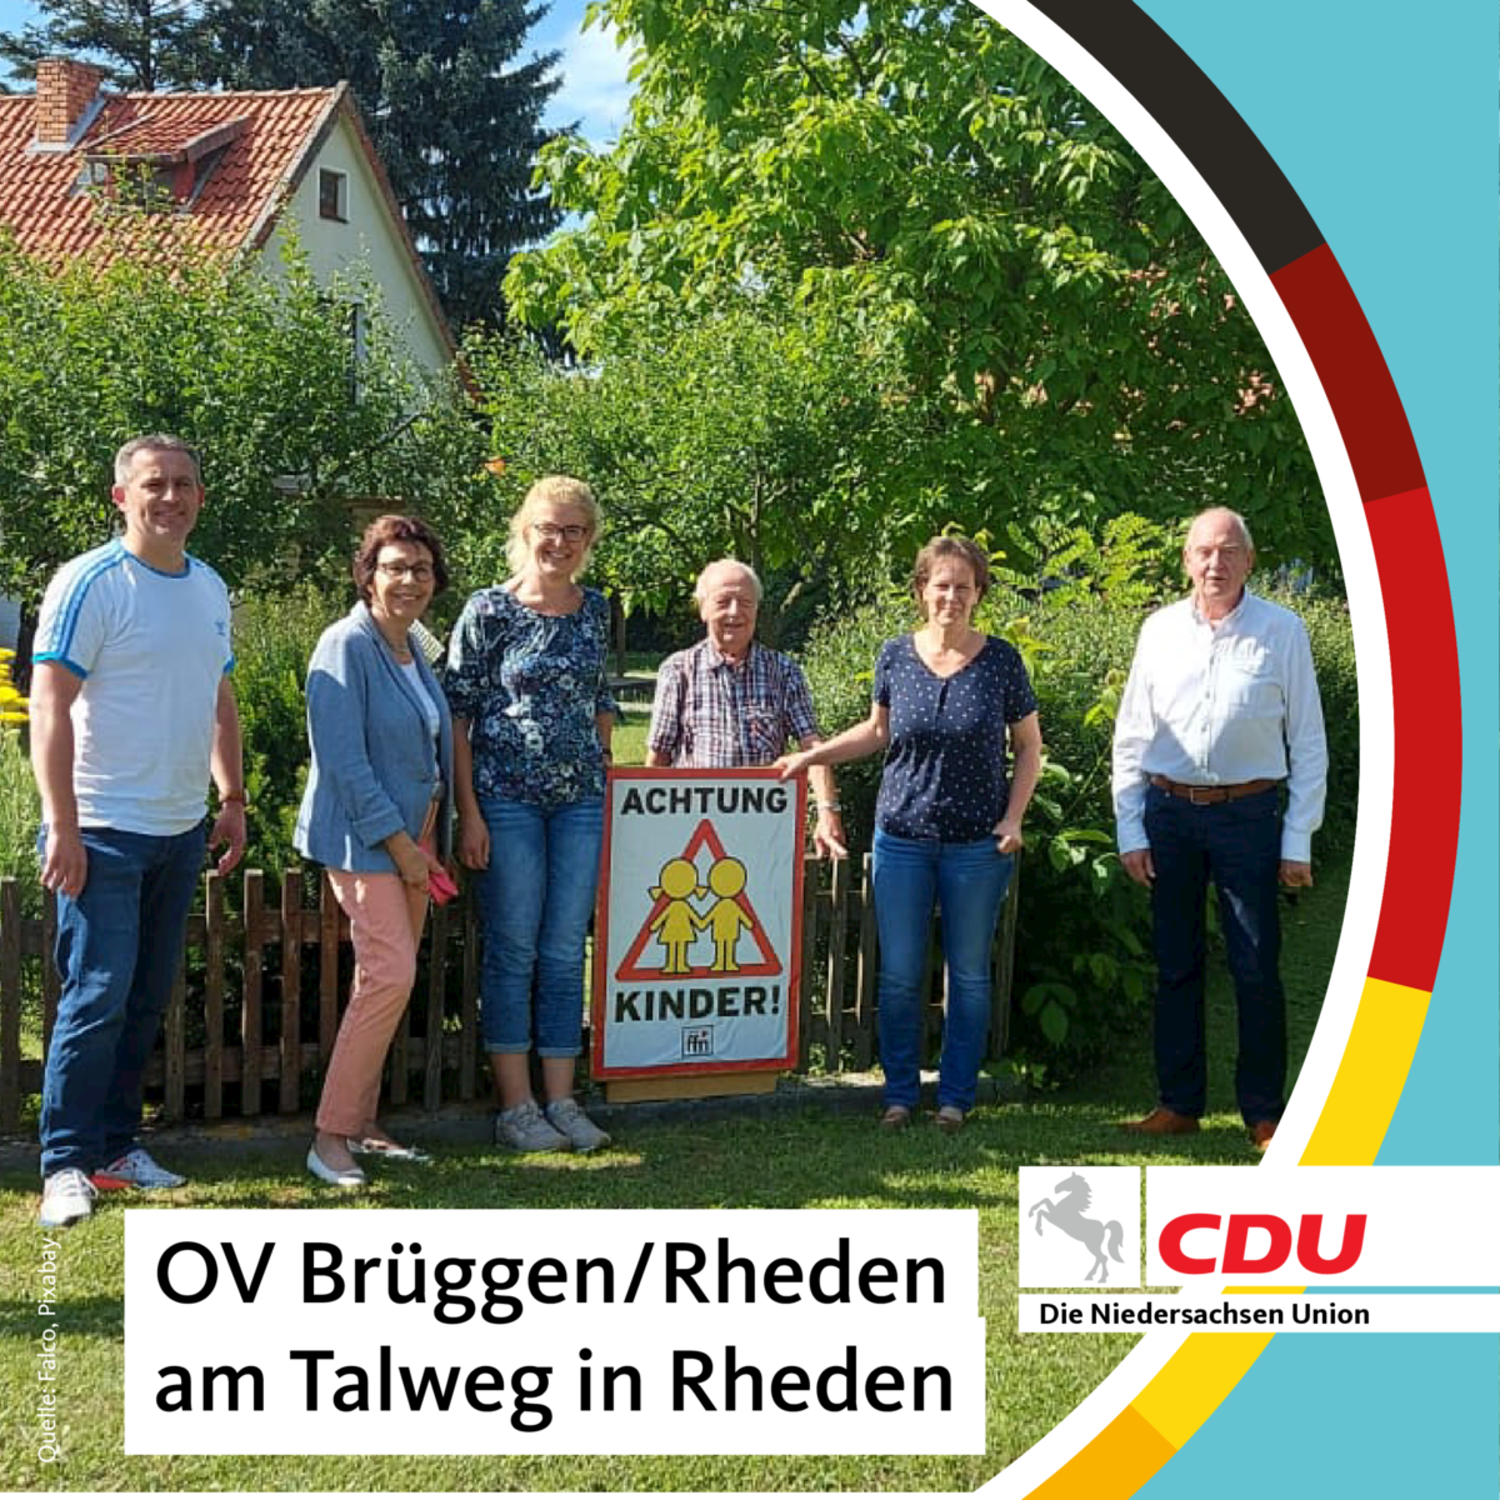 Der CDU Ortsverband Brüggen/Rheden platziert das Schild am Talweg in Rheden !